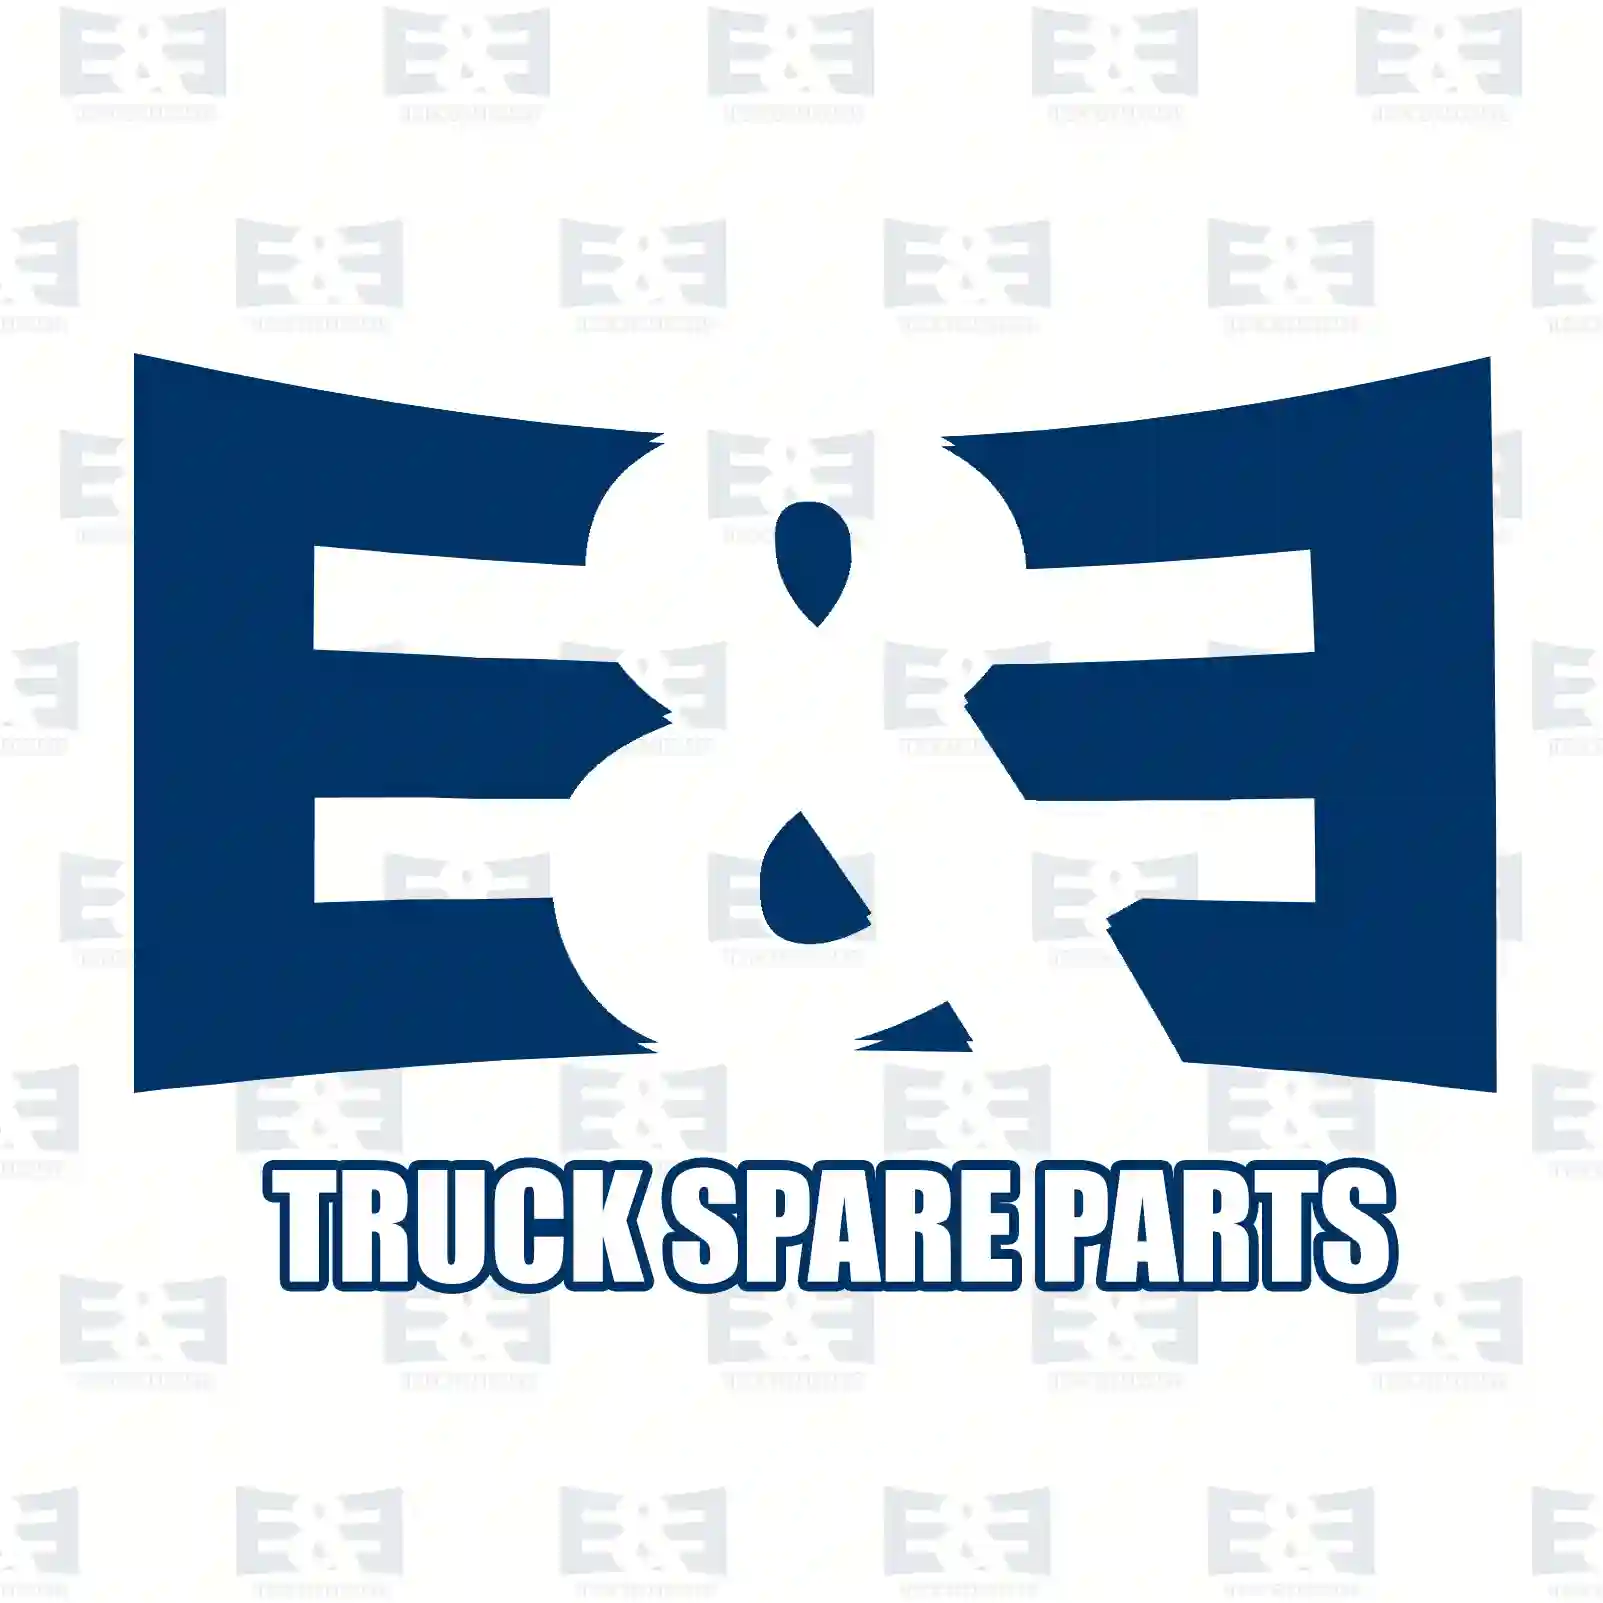 O-ring, 2E2286184, 06563314245, 06563334245, 64965010036, , ||  2E2286184 E&E Truck Spare Parts | Truck Spare Parts, Auotomotive Spare Parts O-ring, 2E2286184, 06563314245, 06563334245, 64965010036, , ||  2E2286184 E&E Truck Spare Parts | Truck Spare Parts, Auotomotive Spare Parts